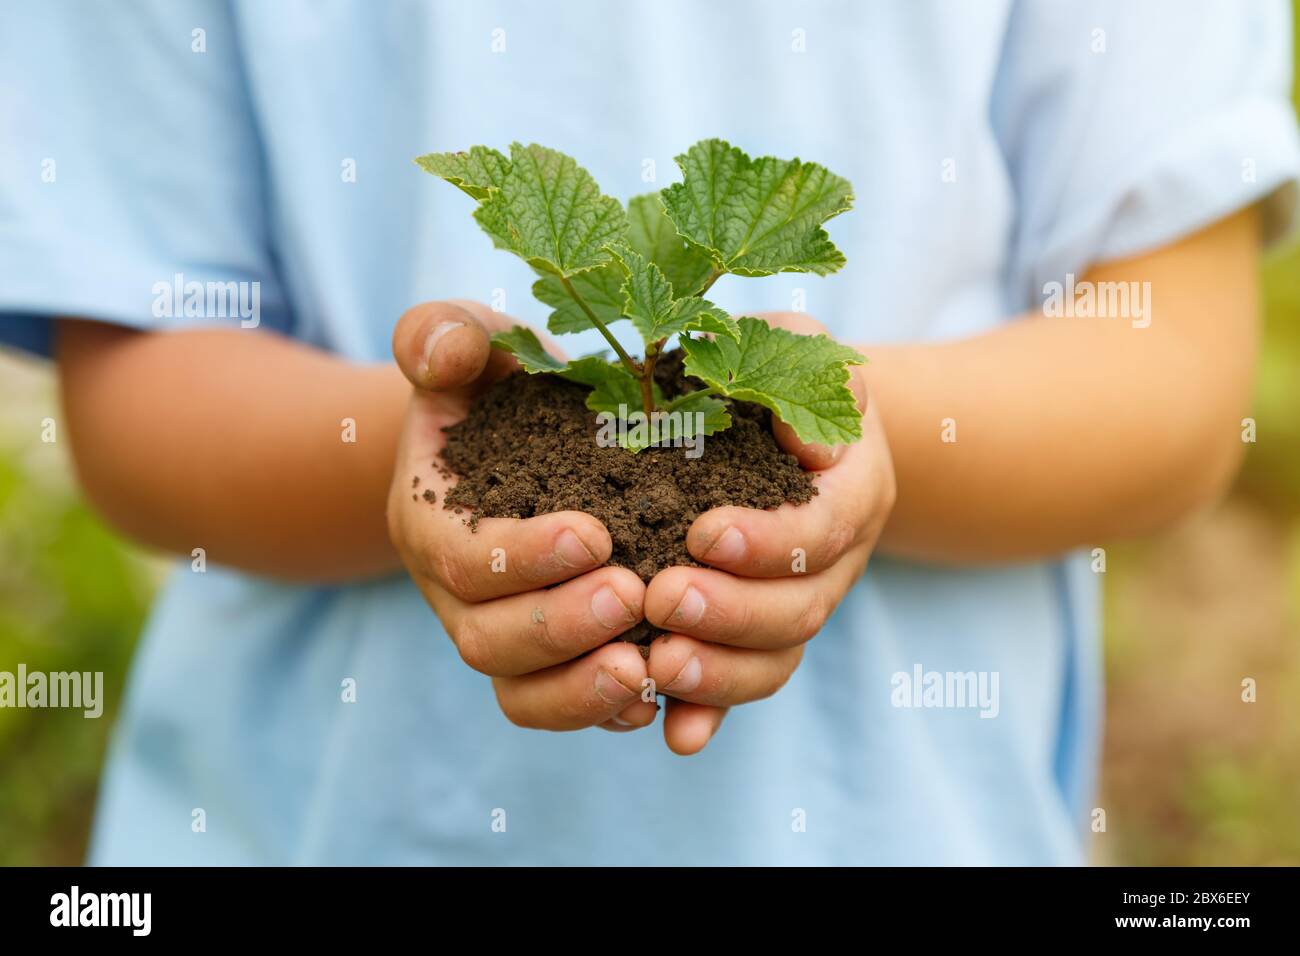 Neues Leben Pflanze Kind Hände halten Baum Natur leben Konzept Garten Garten Garten Garten Stockfoto